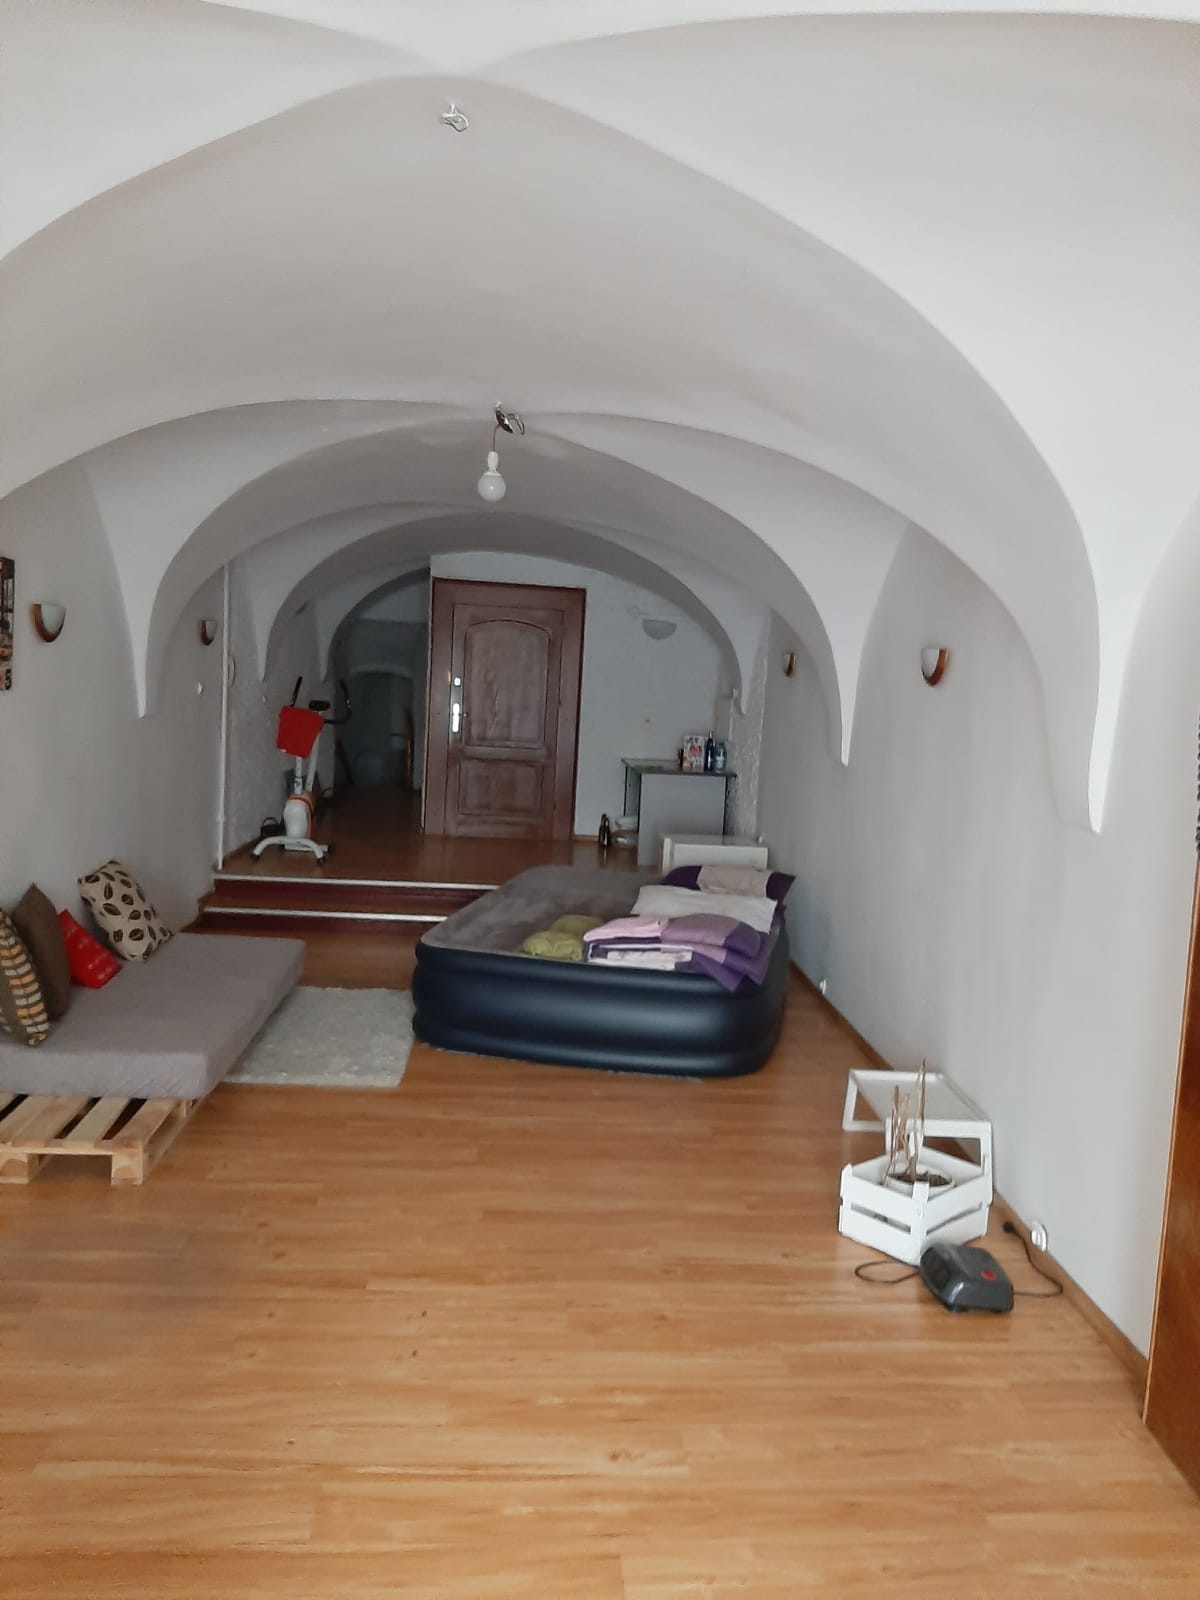 Dwupokojowe mieszkanie położone w kamienicy w ścisłym centrum Świdnicy.